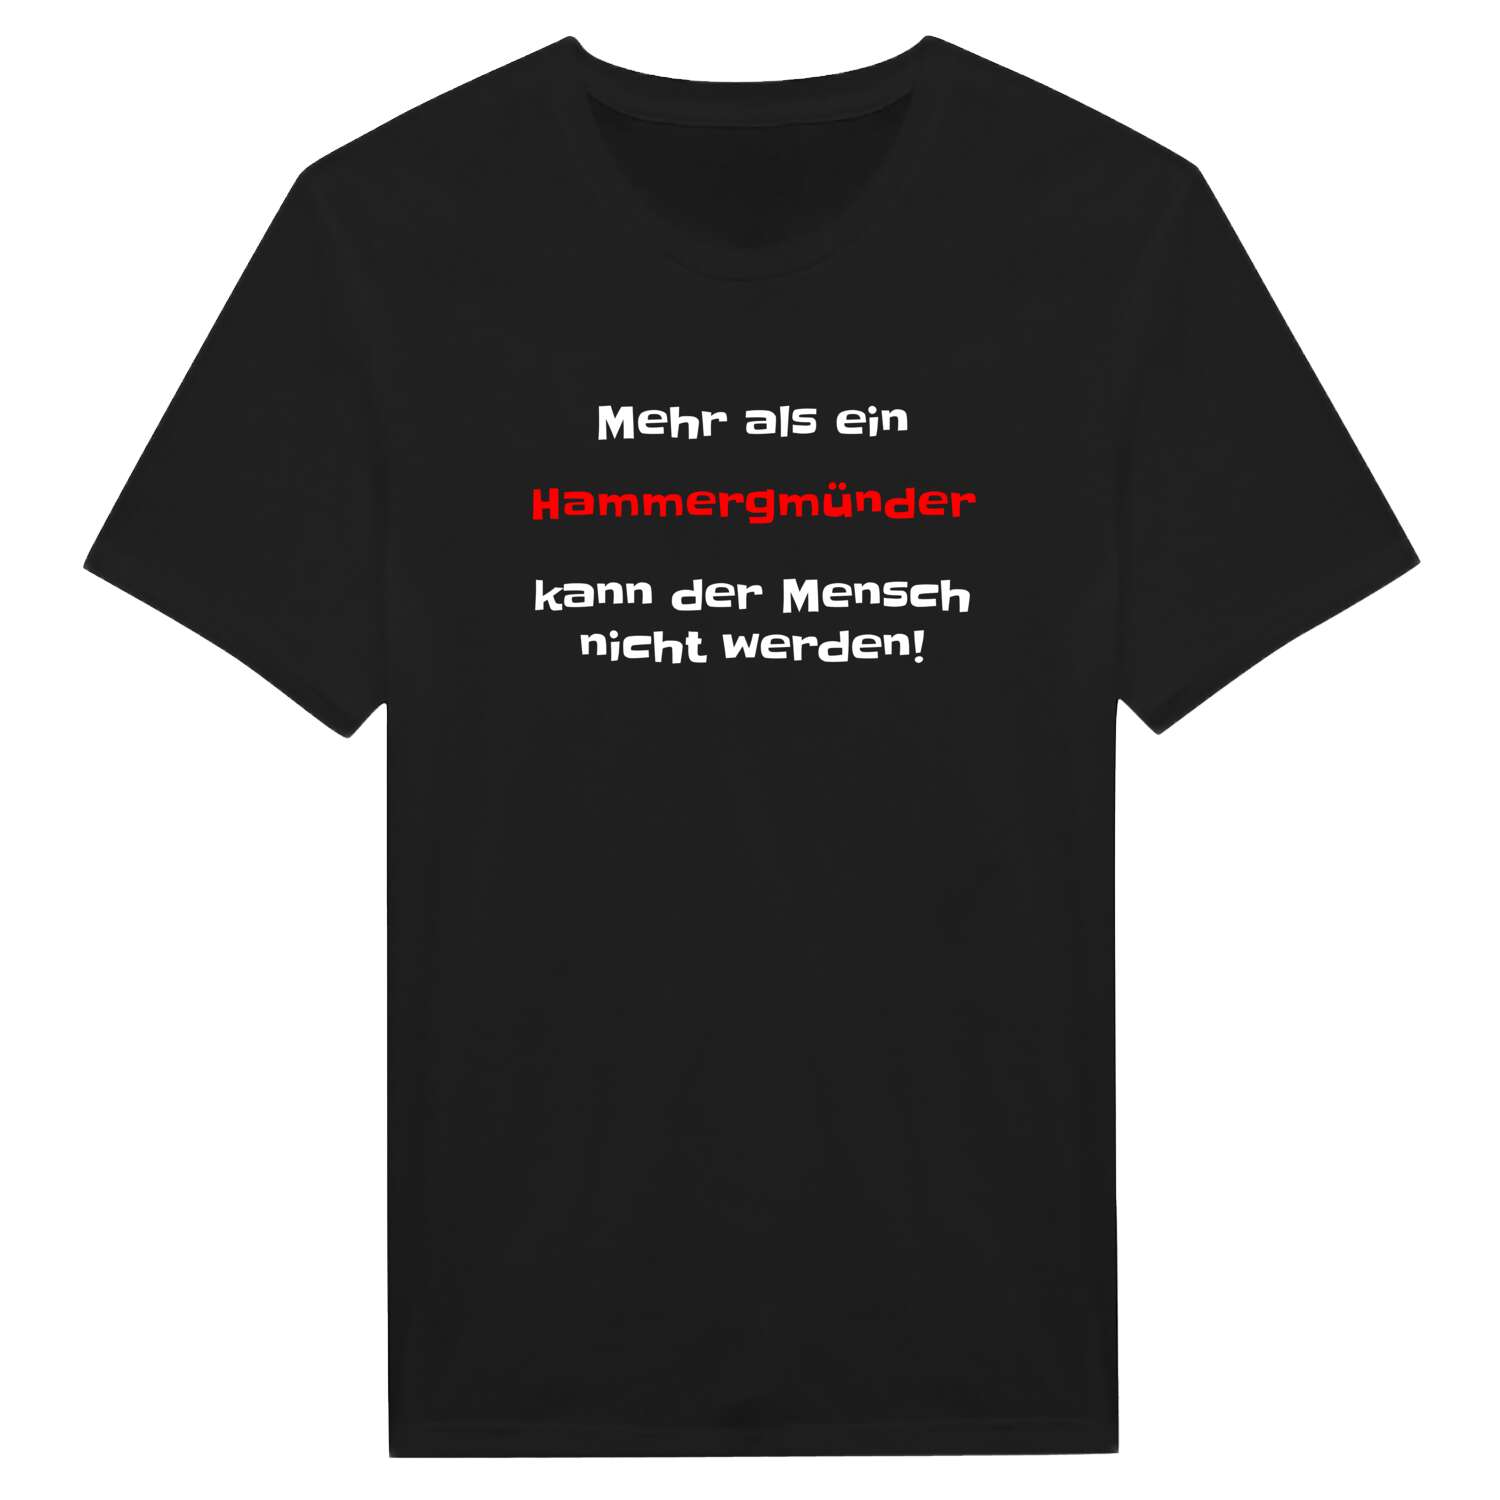 Hammergmünd T-Shirt »Mehr als ein«